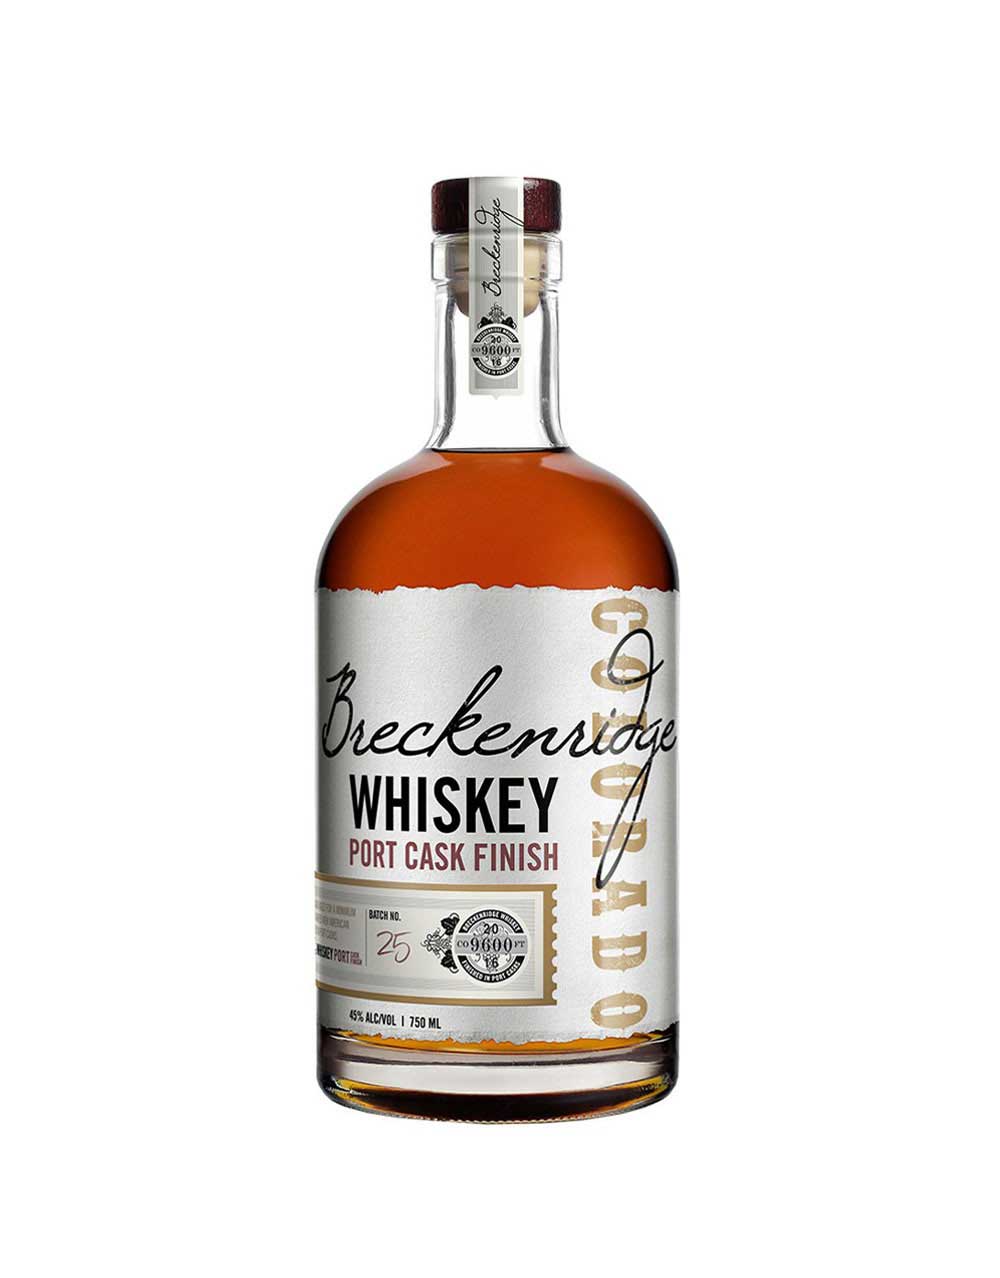 Johnnie Walker Select Casks Rye Cask Finish Scotch Whisky